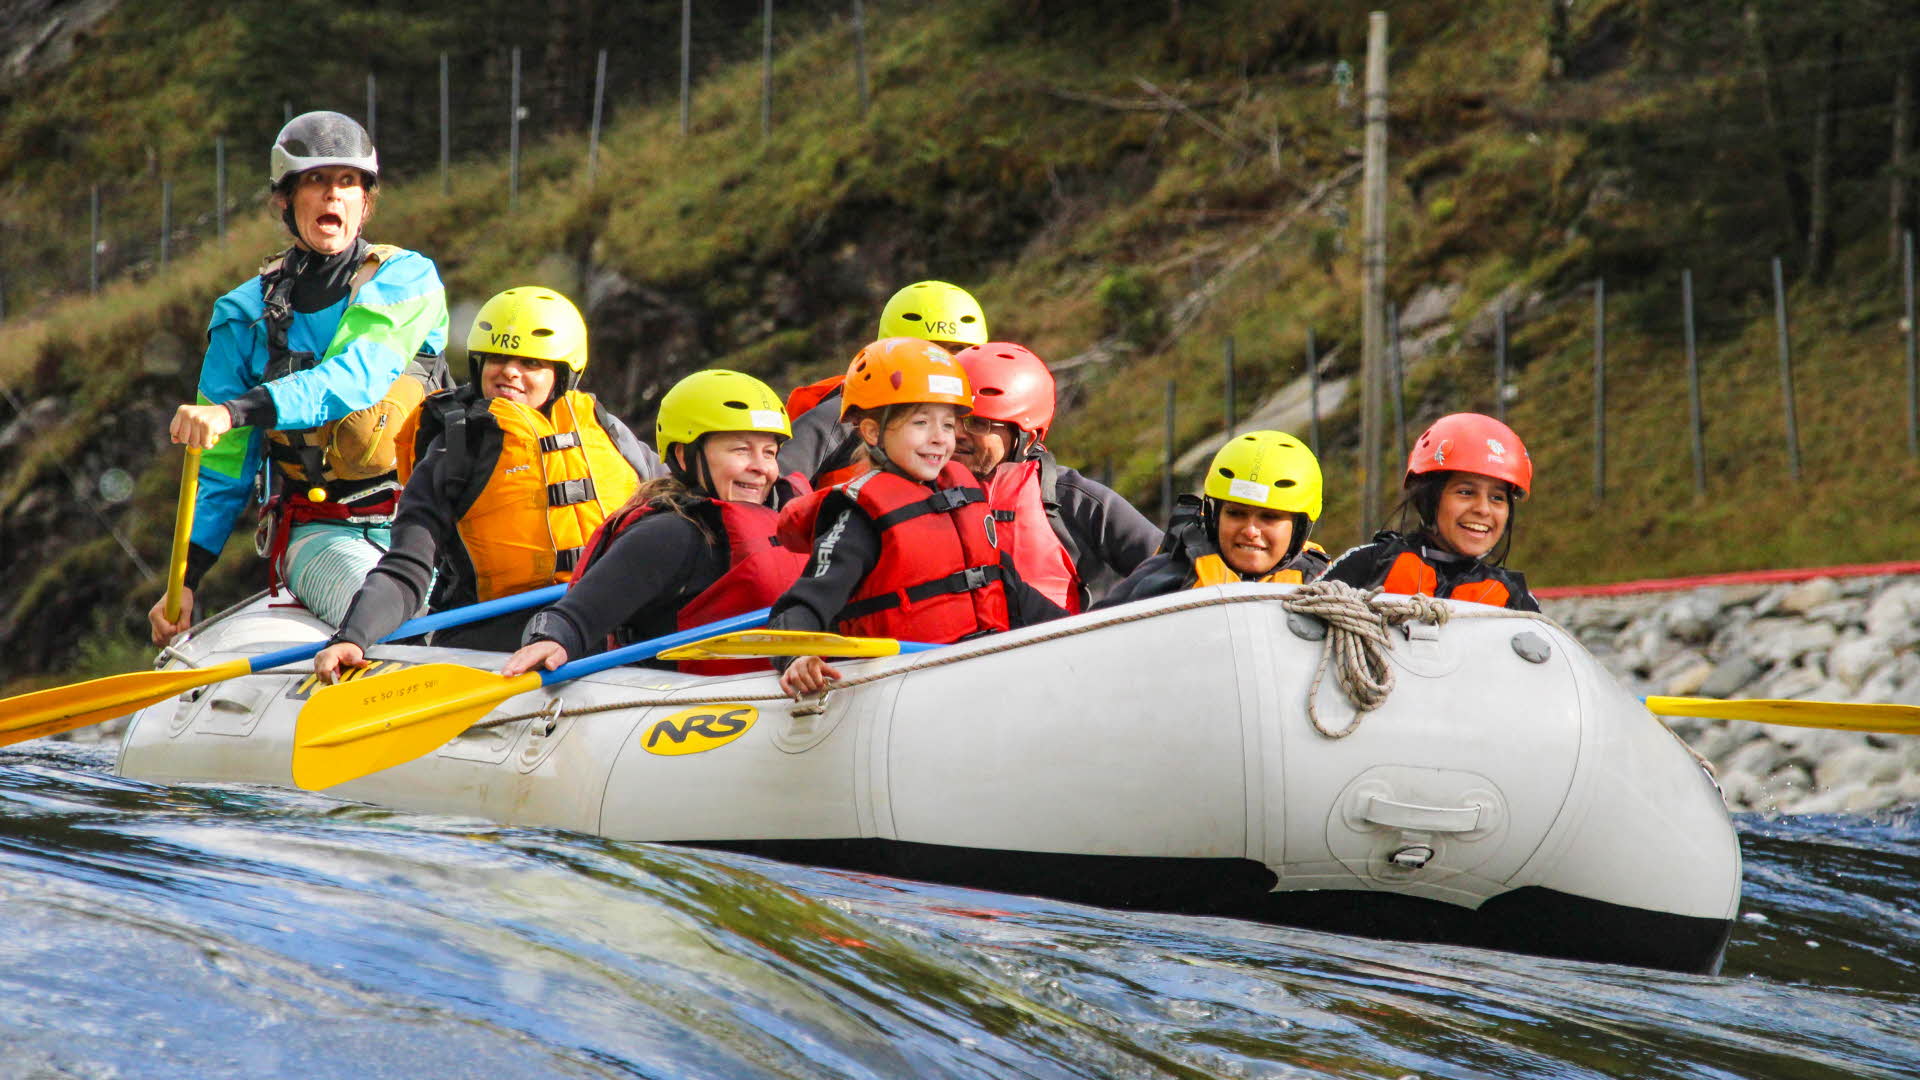 Des enfants souriants équipés de gilets de sauvetage et casques sont assis dans un raft pendant que le guide derrière eux crie.